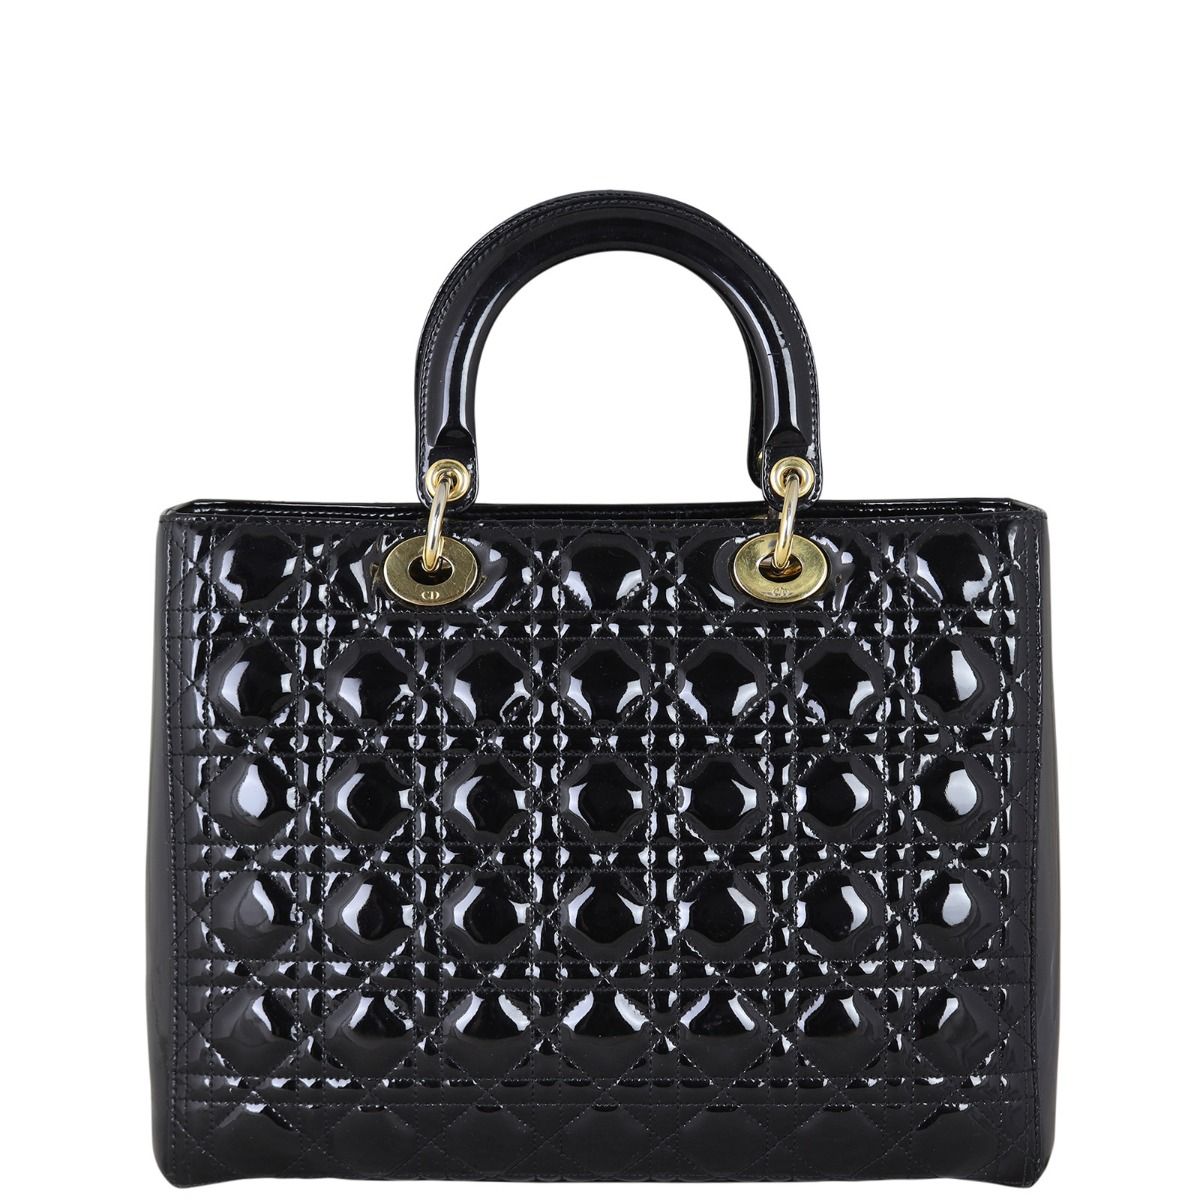 Christian Dior Bondage handbag in black leather Dior by Galliano  AW  Al  fintage